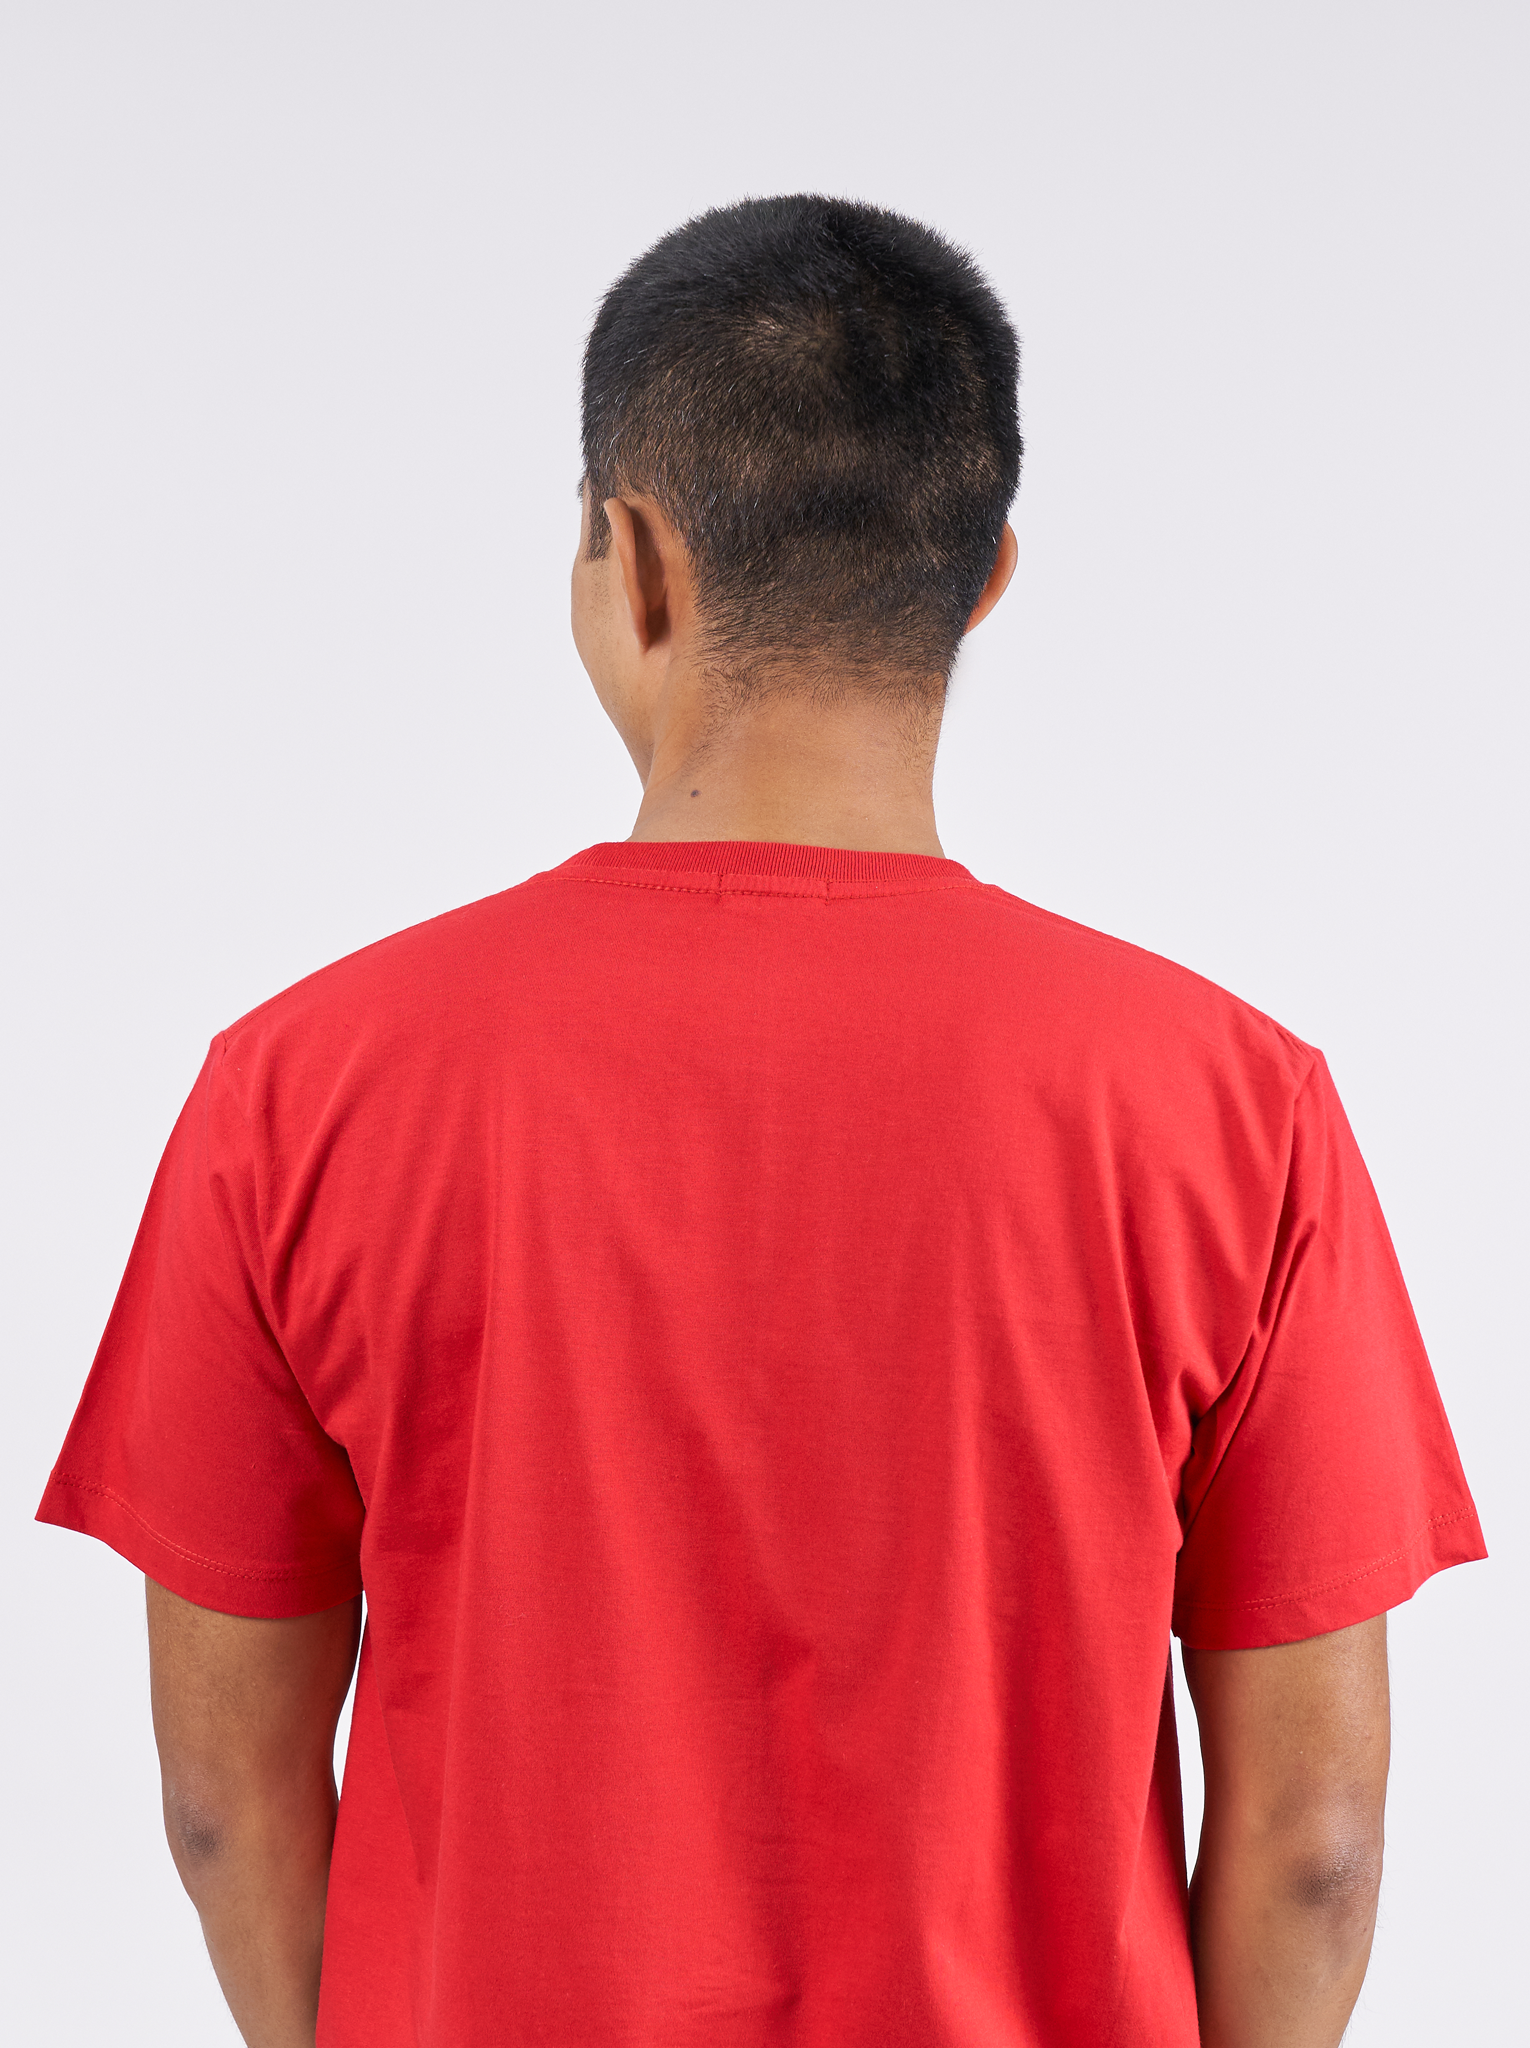 T-Shirt เสื้อยืด (Red, สีแดง)(Unisex)